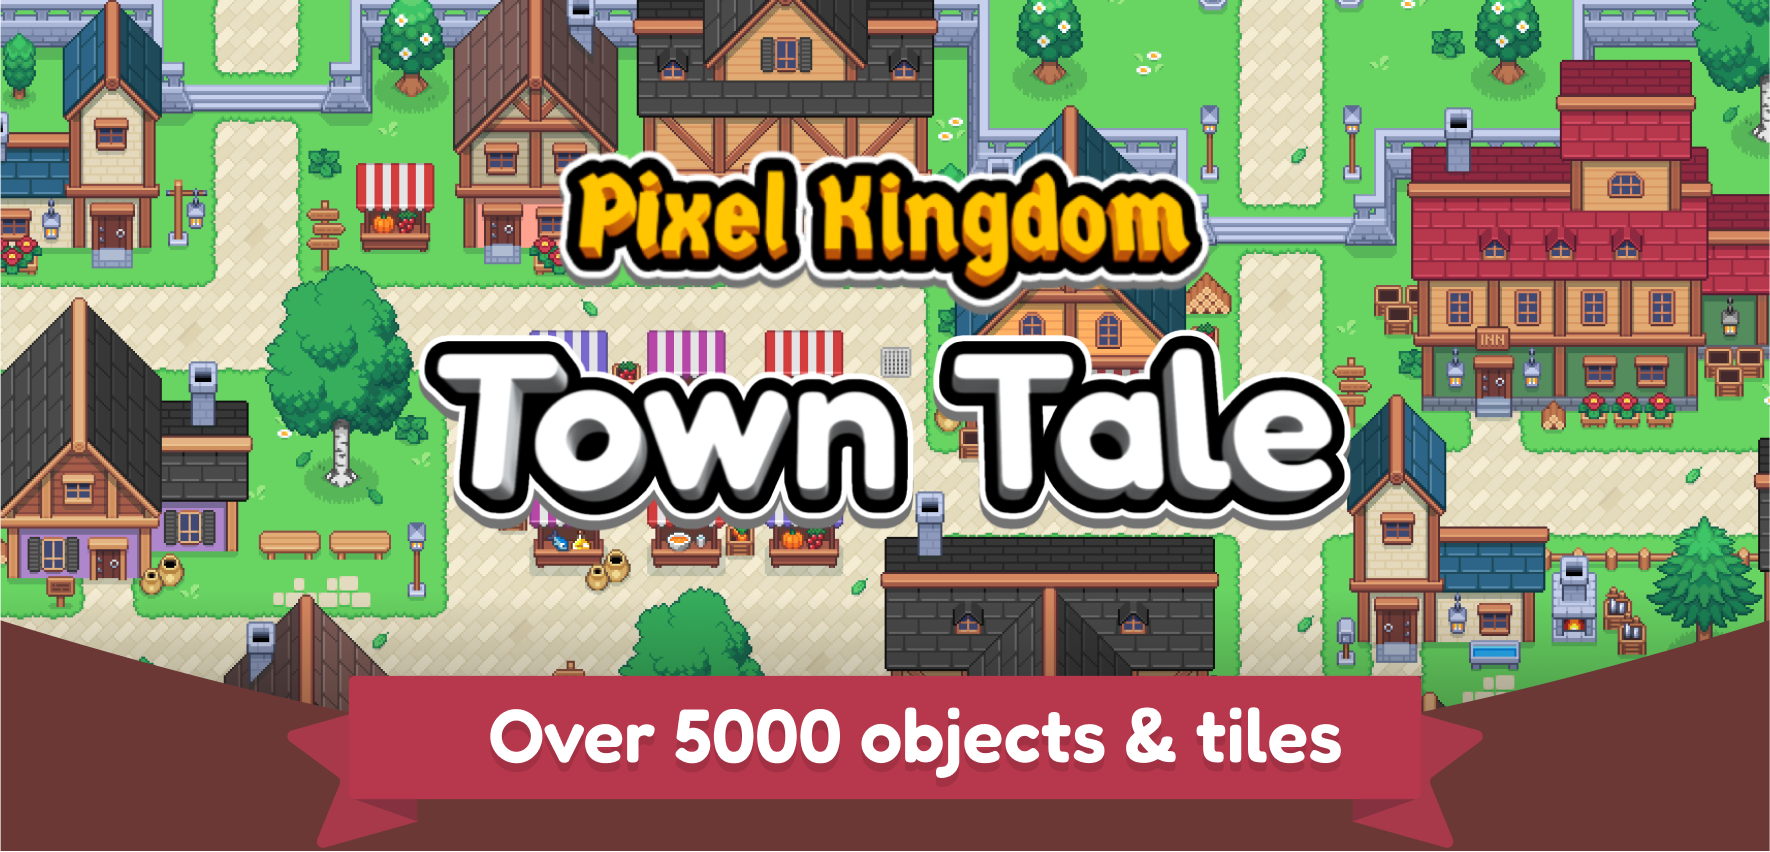 Pixel Kingdom - Town Tale